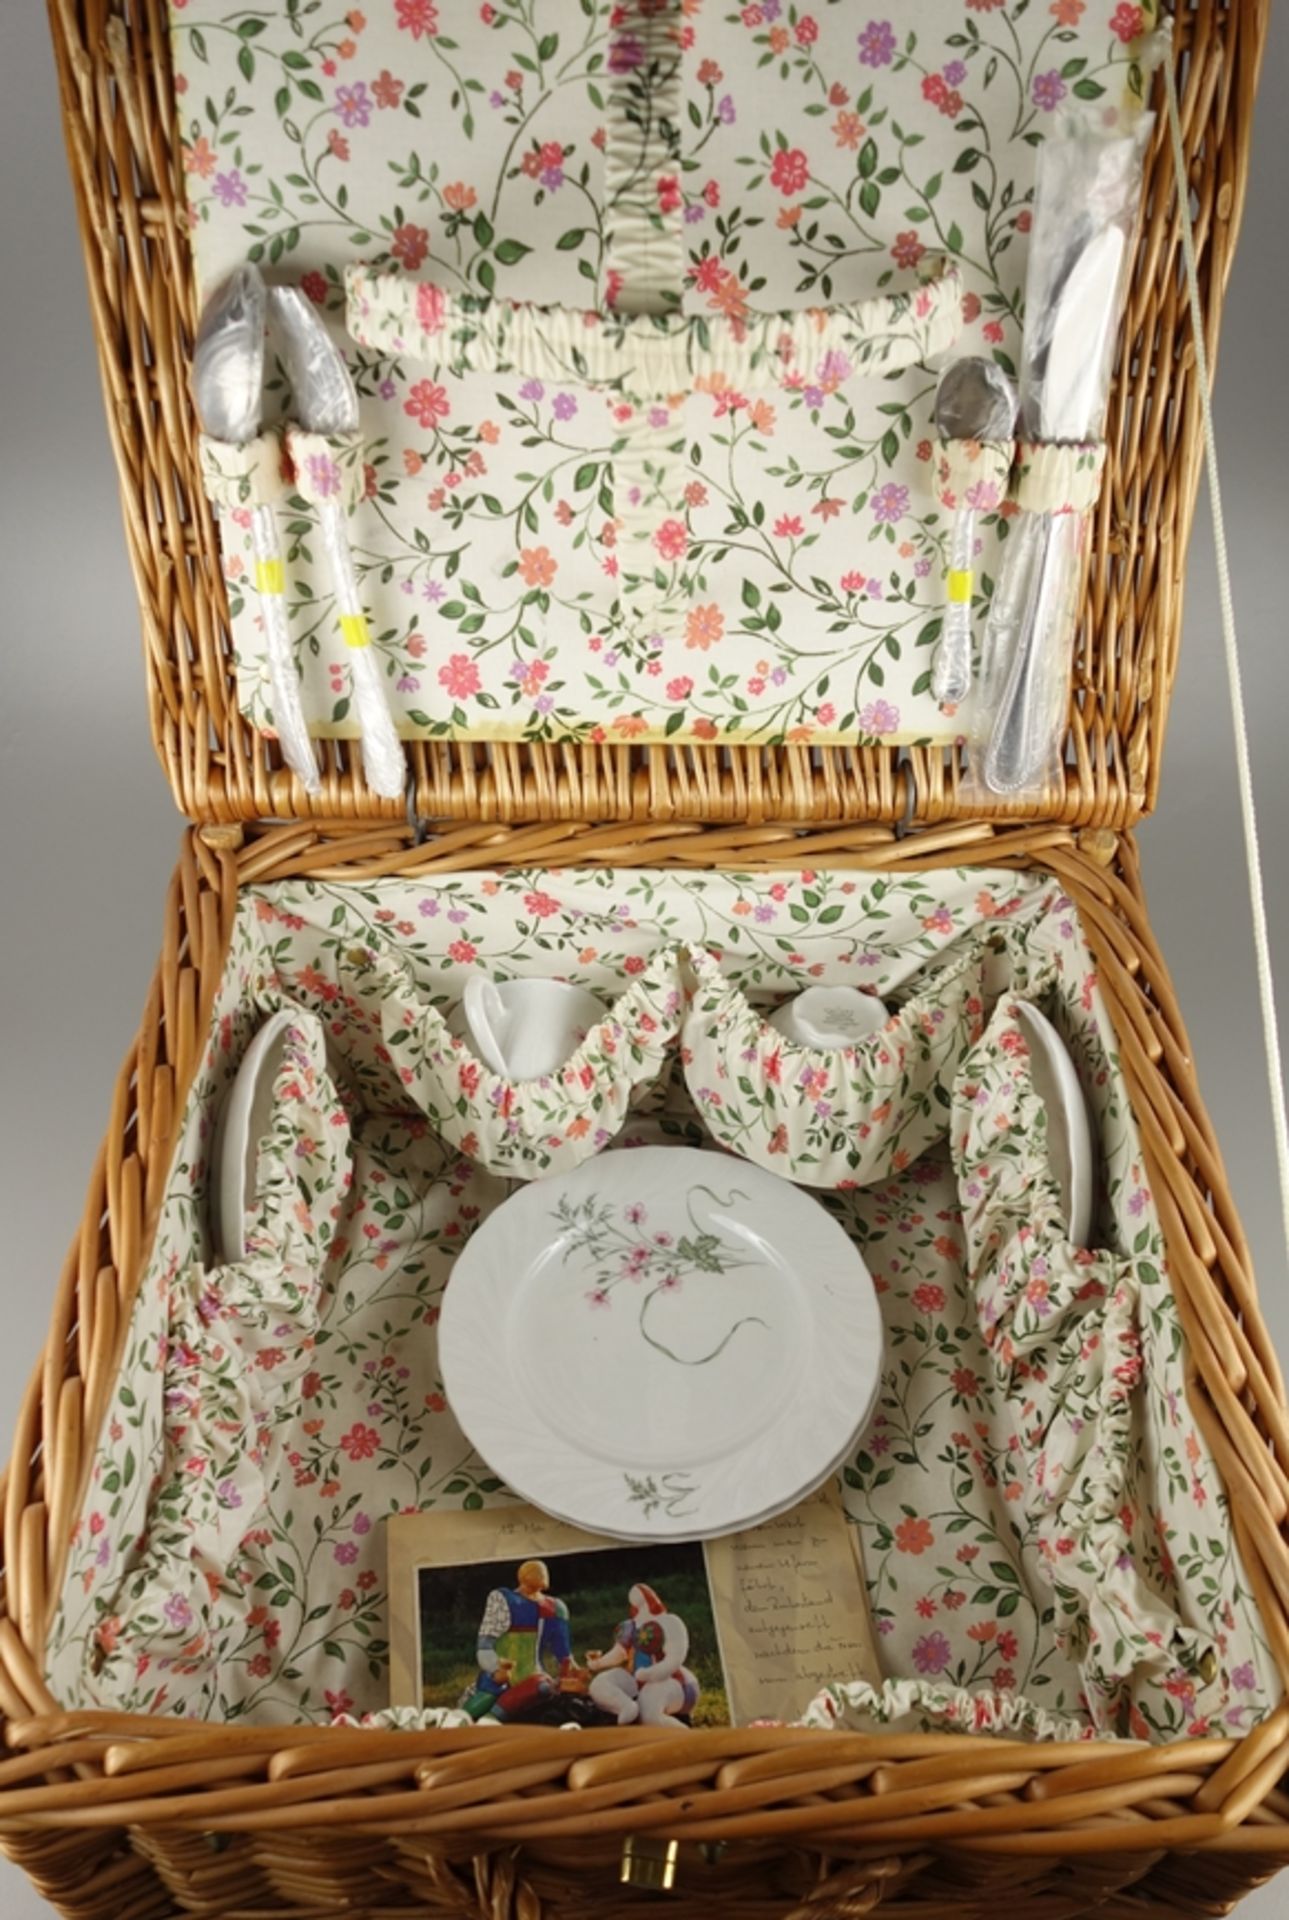 Picknick-Koffer, bestückt mit Porzellan und Besteck für 2 Pers. - Bild 2 aus 2